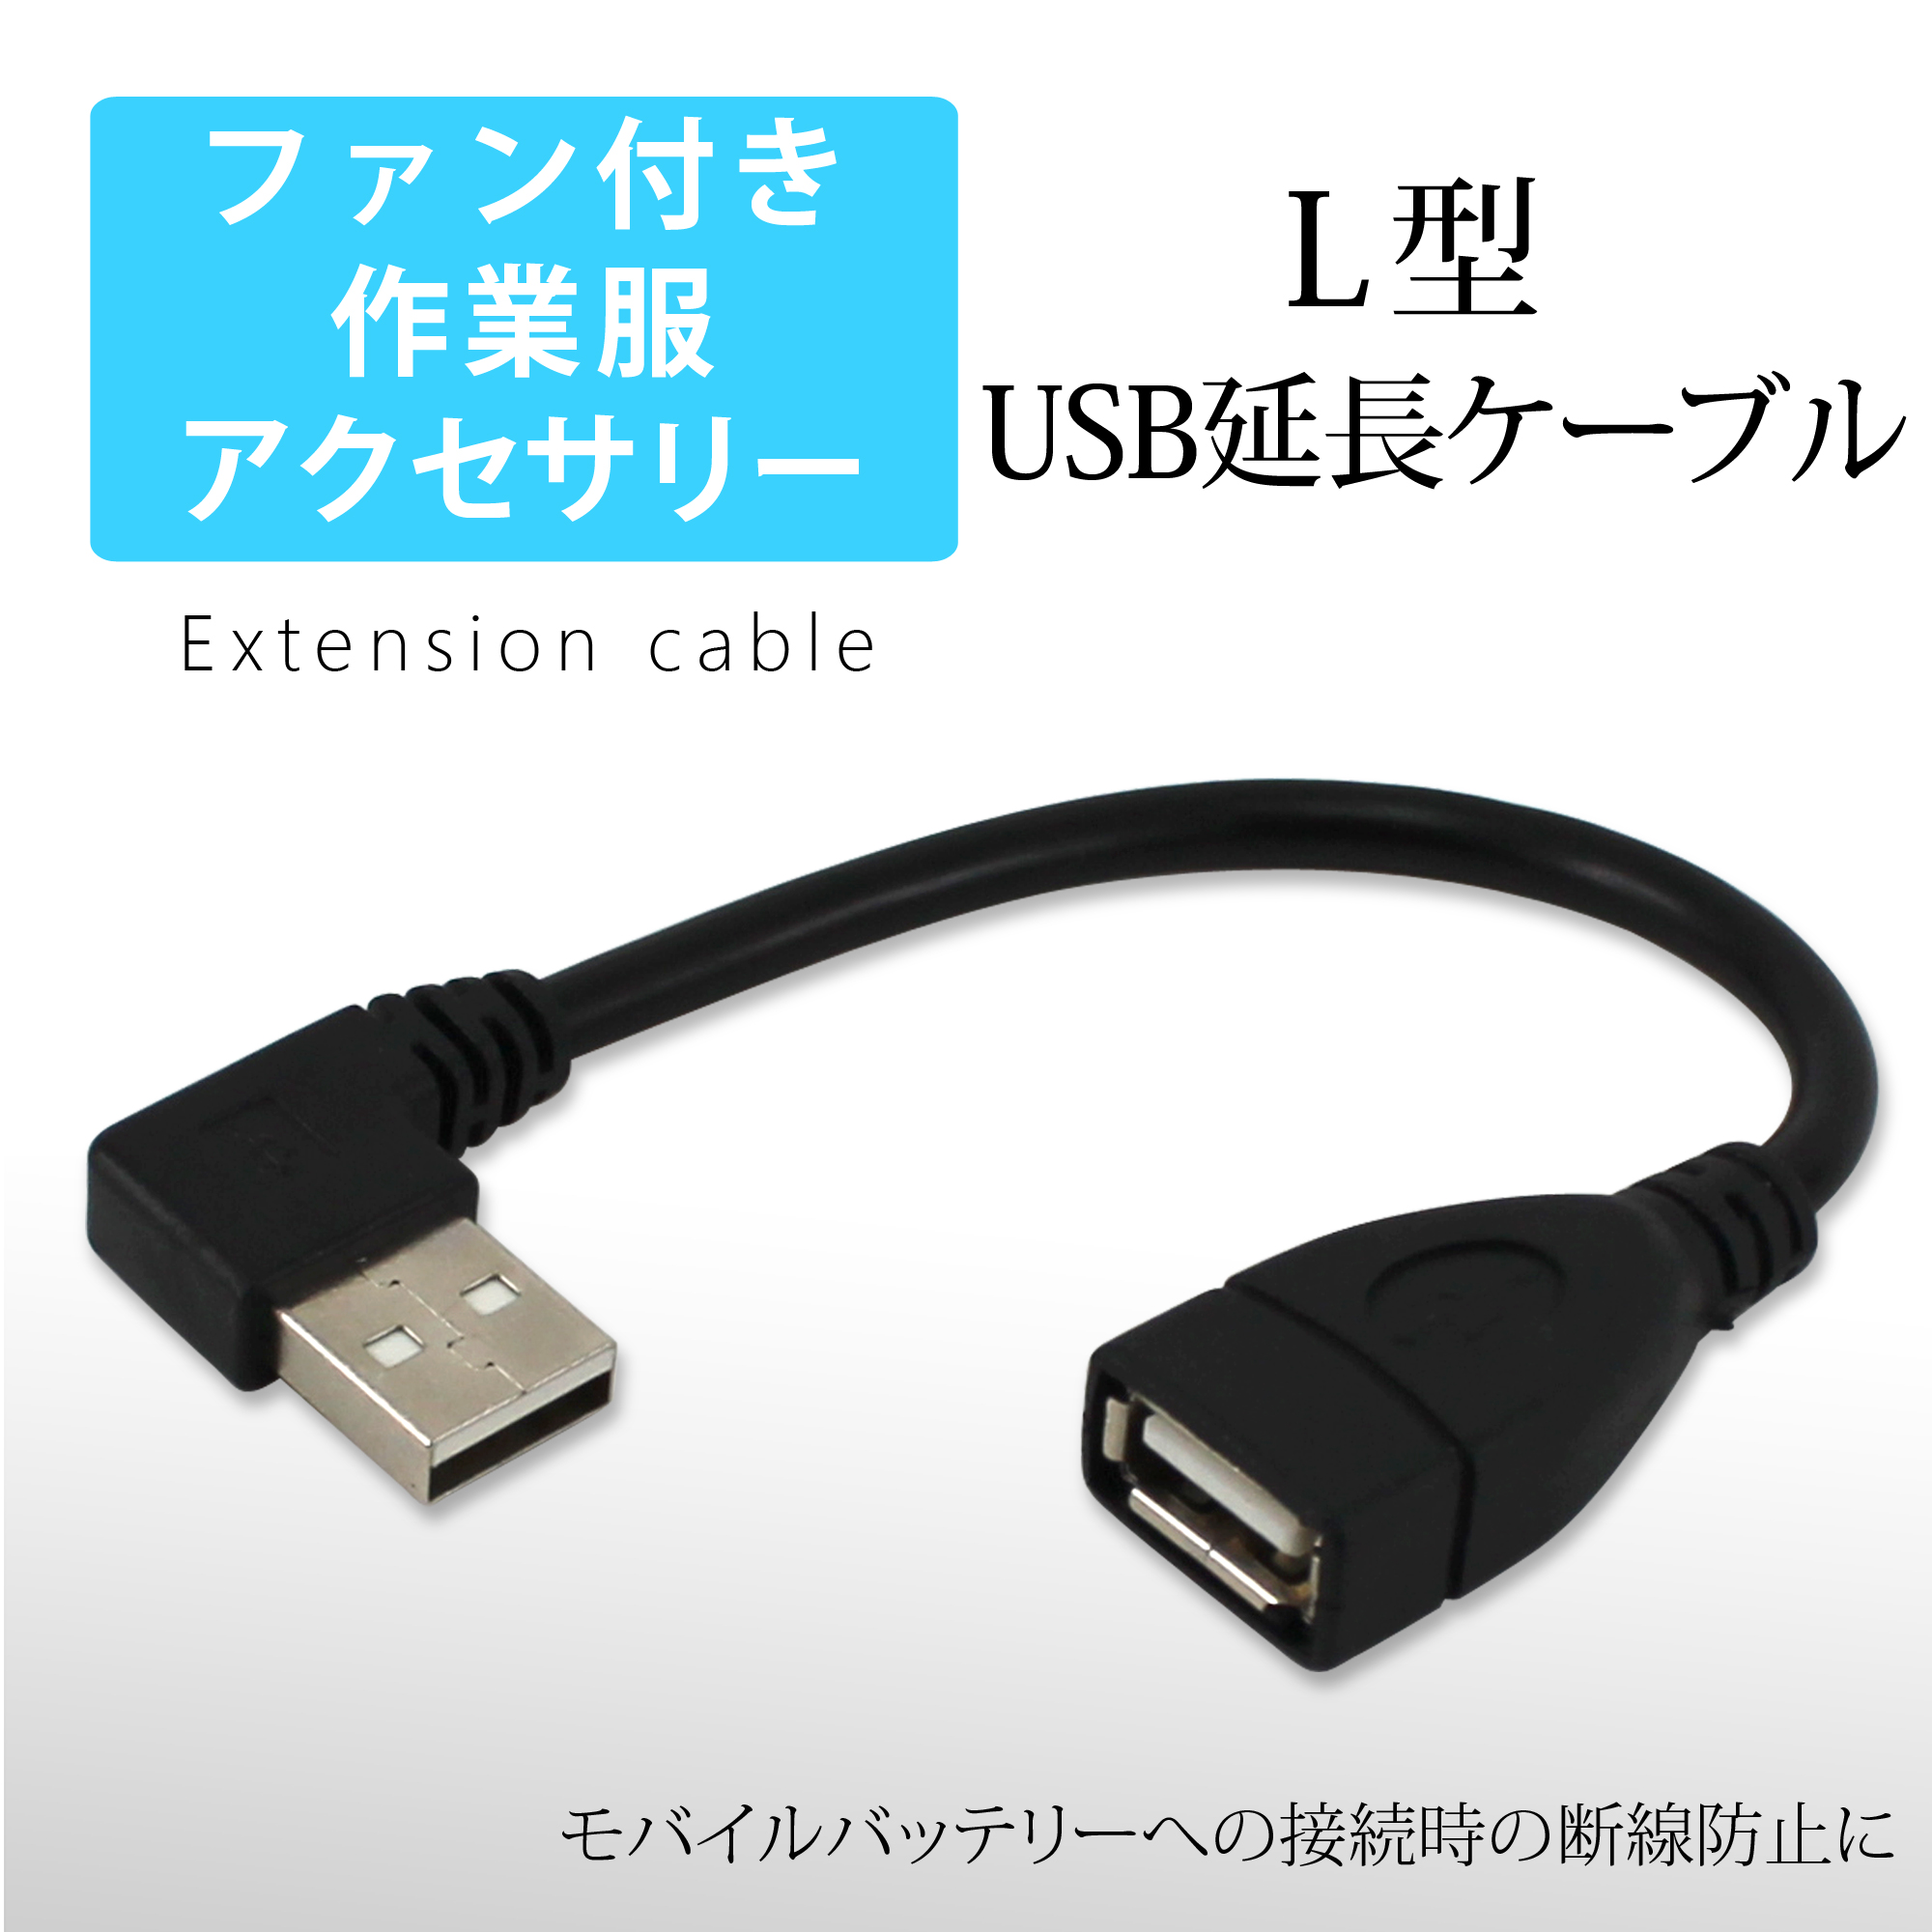 ファン付き作業服 USB 延長ケーブル L型 USBケーブル whitenuts(ホワイトナッツ)